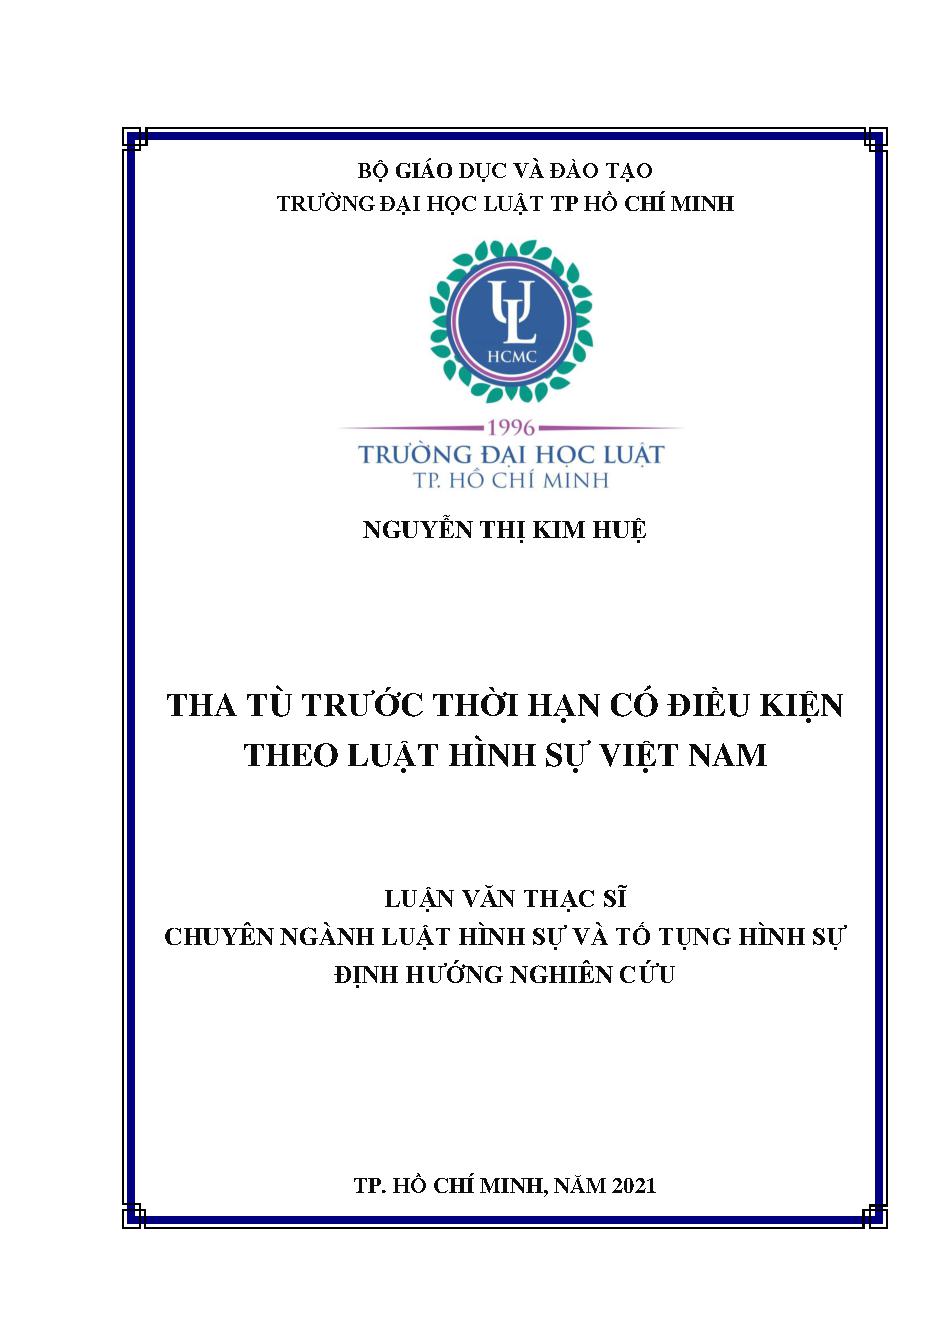 Tha tù trước thời hạn có điều kiện theo pháp luật hình sự Việt Nam